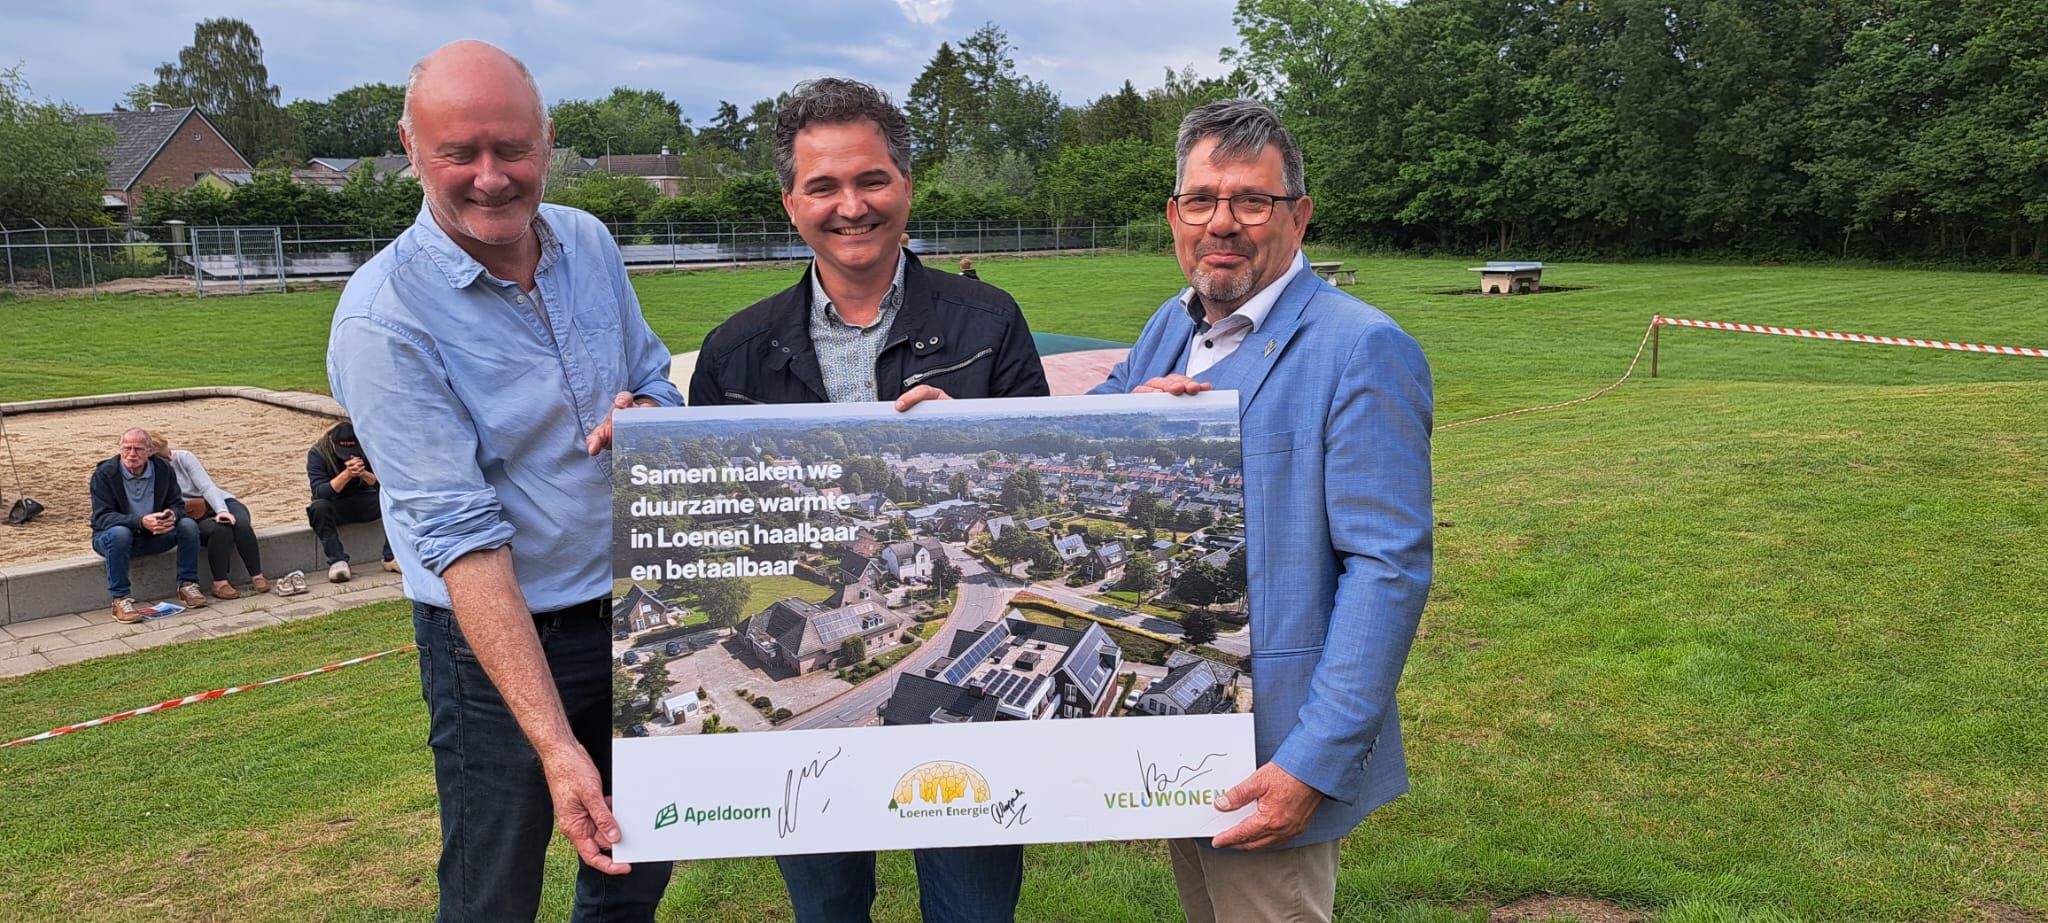 25 mei ondertekenden gemeente Apeldoorn, woningbouwcorporatie Veluwonen en energiecoöperatie Loenen Energie een overeenkomst om duurzame warmte in Loenen haalbaar en betaalbaar te maken.